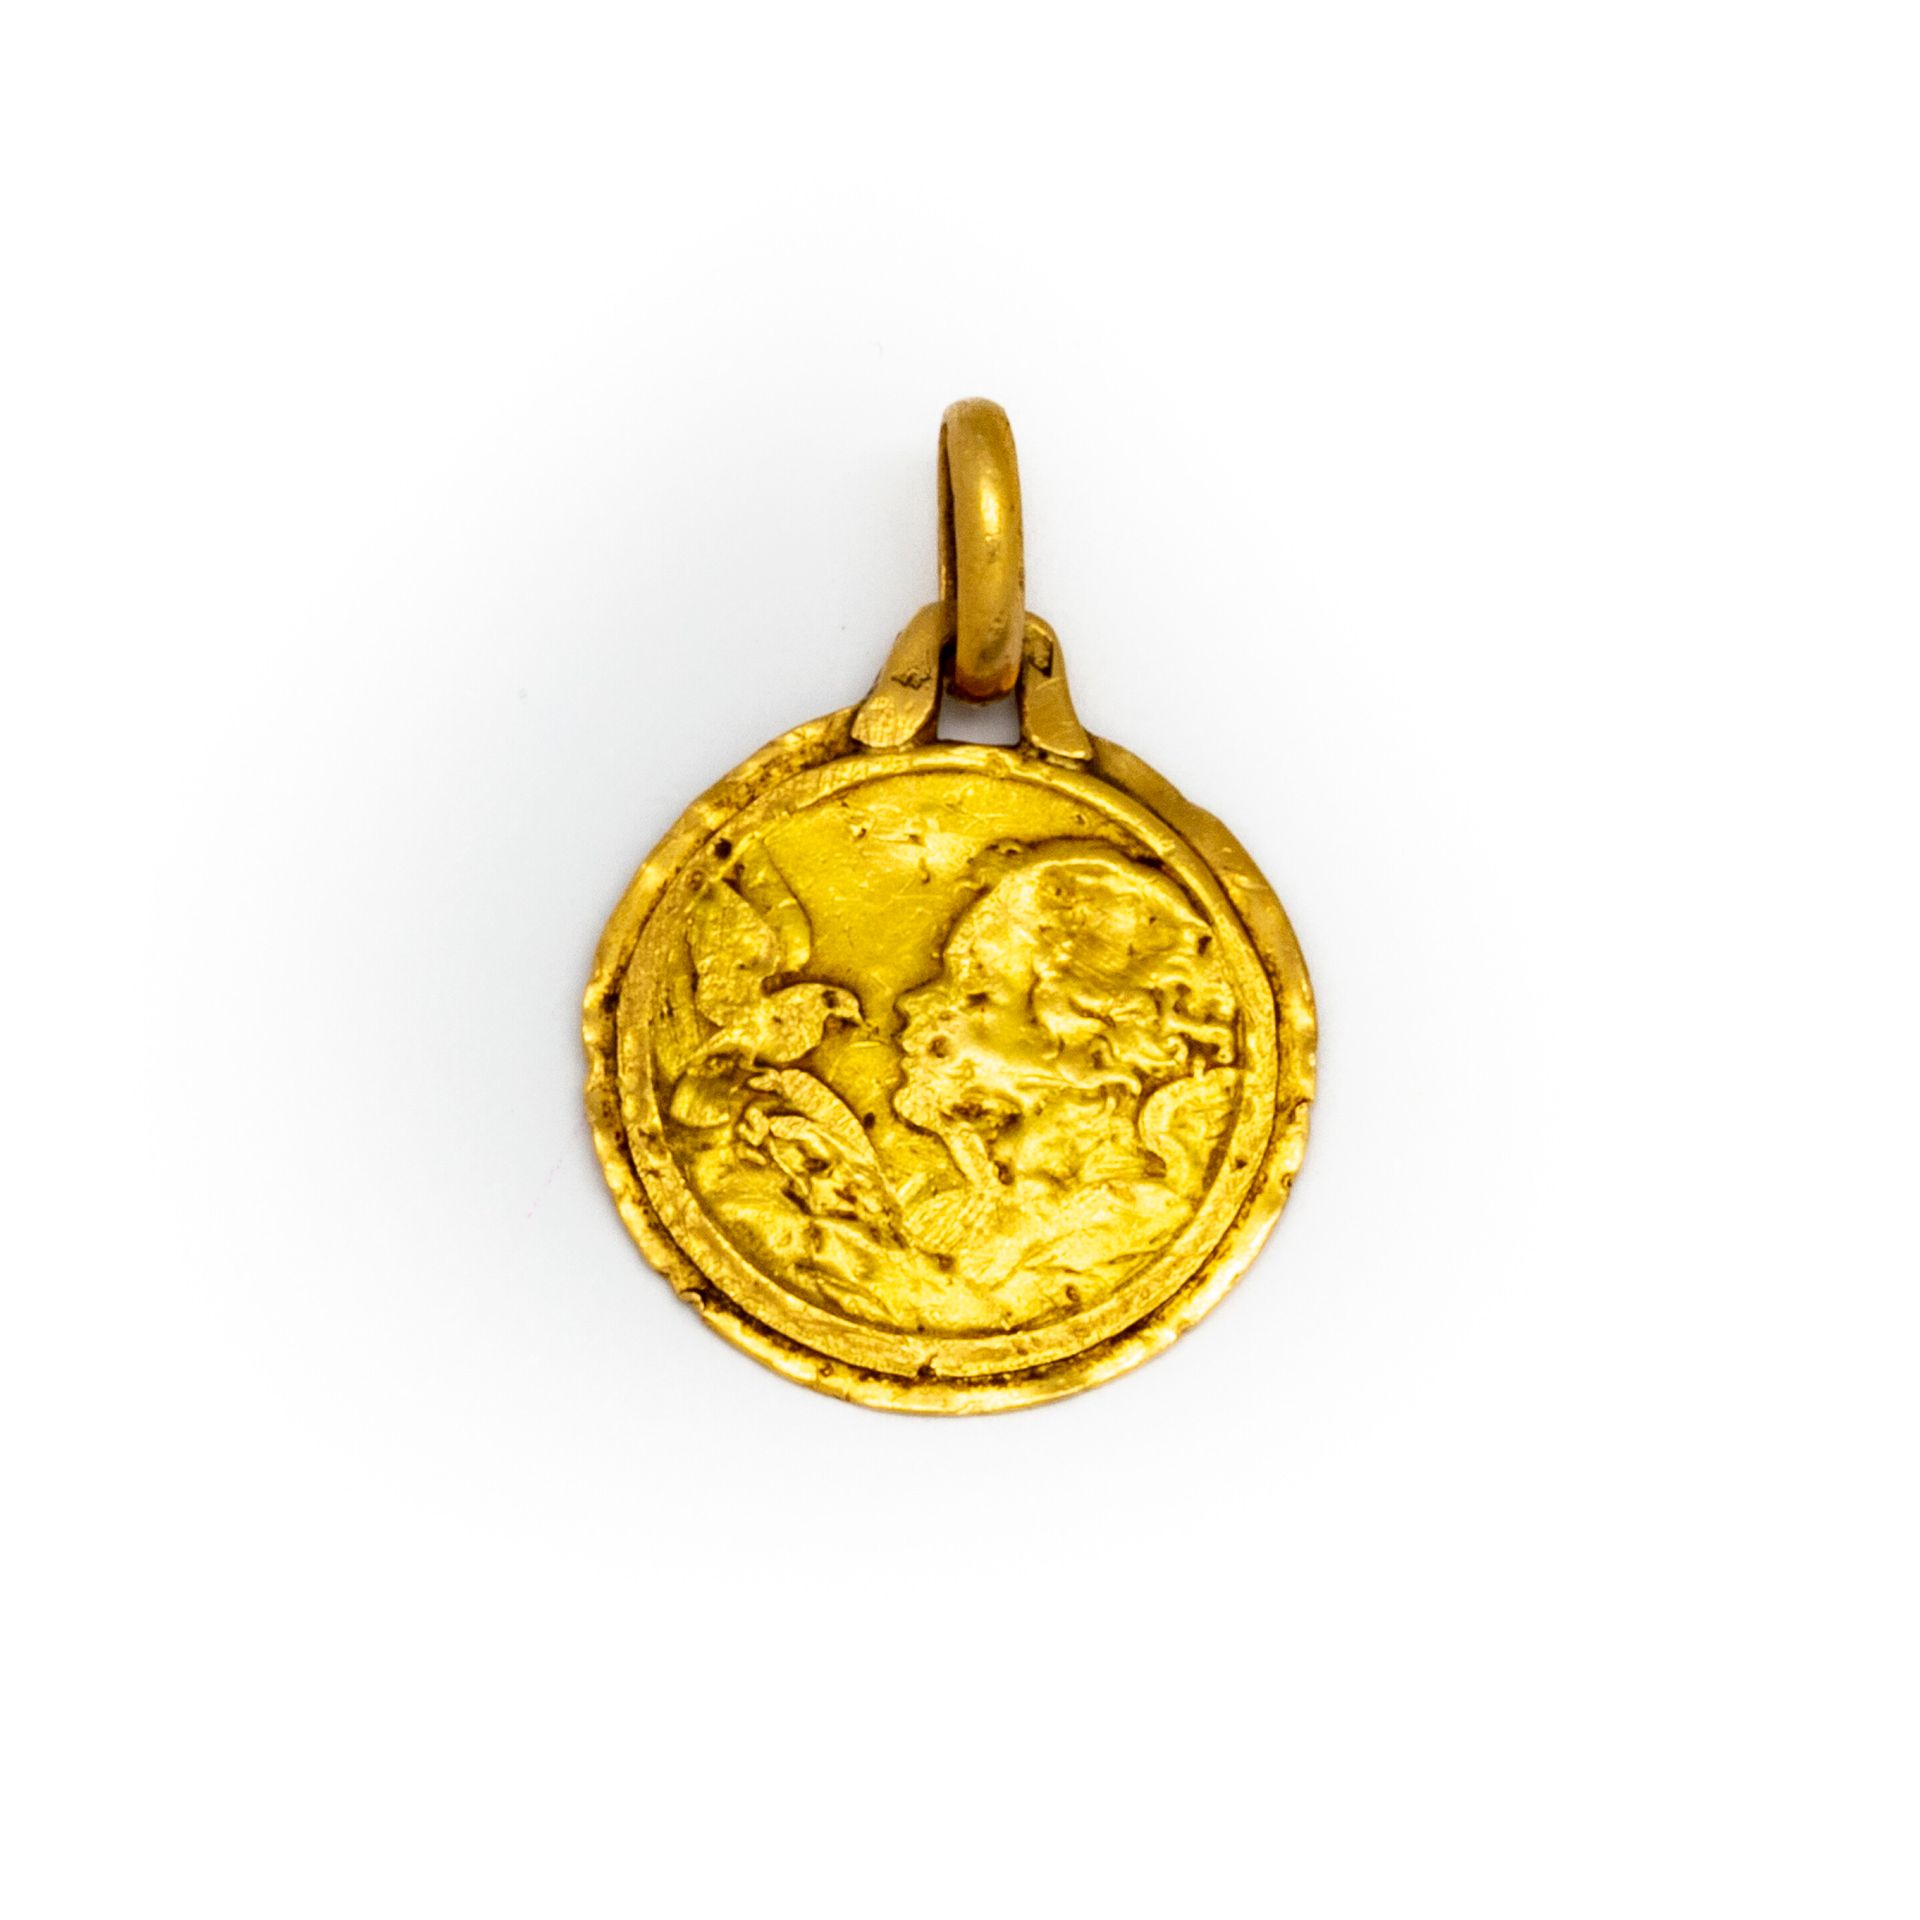 Null Medaglia in oro giallo con incisione Sylvie 
Peso: 1 g